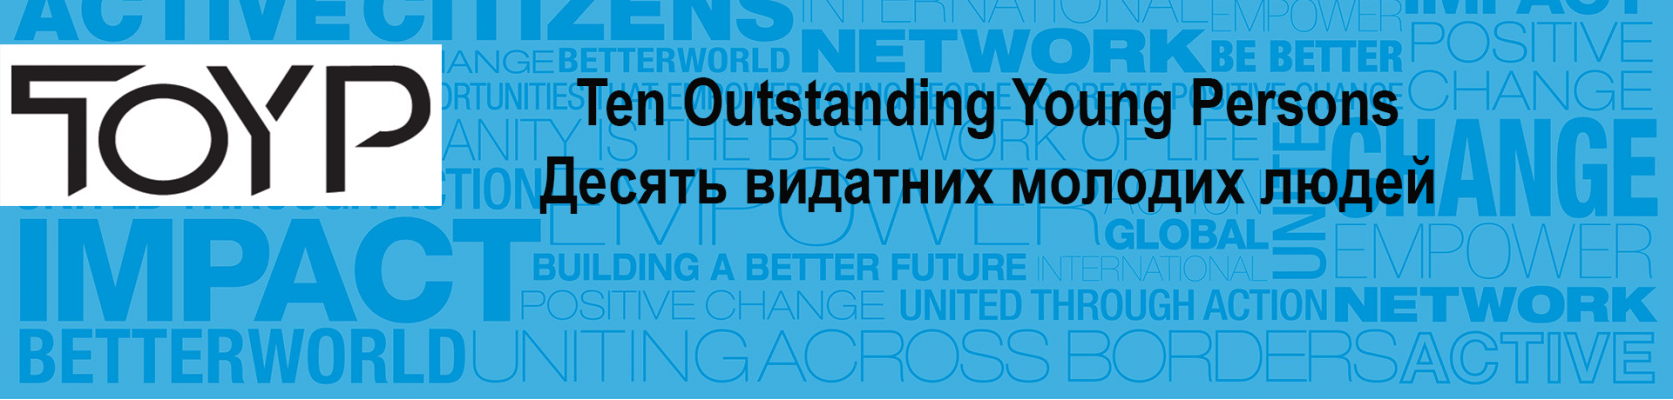 Ten Outstanding Young Persons Ukraine 2014